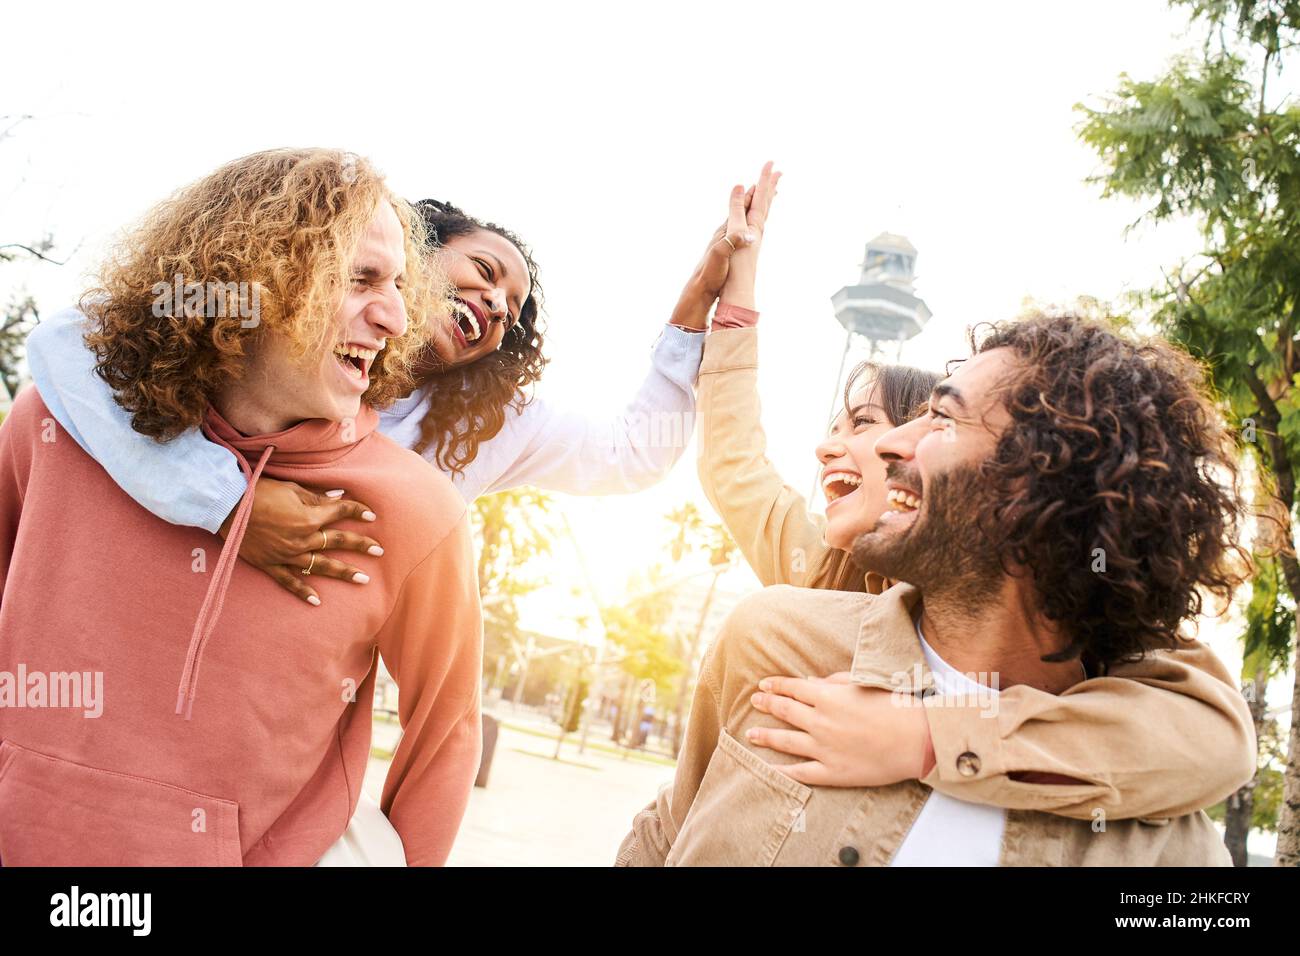 Glückliche Menschen Huckepack. Gruppe von lächelnden Freunden feiern geben High Five feiern Erfolg und Spaß zusammen in einem Park der Stadt. Stockfoto